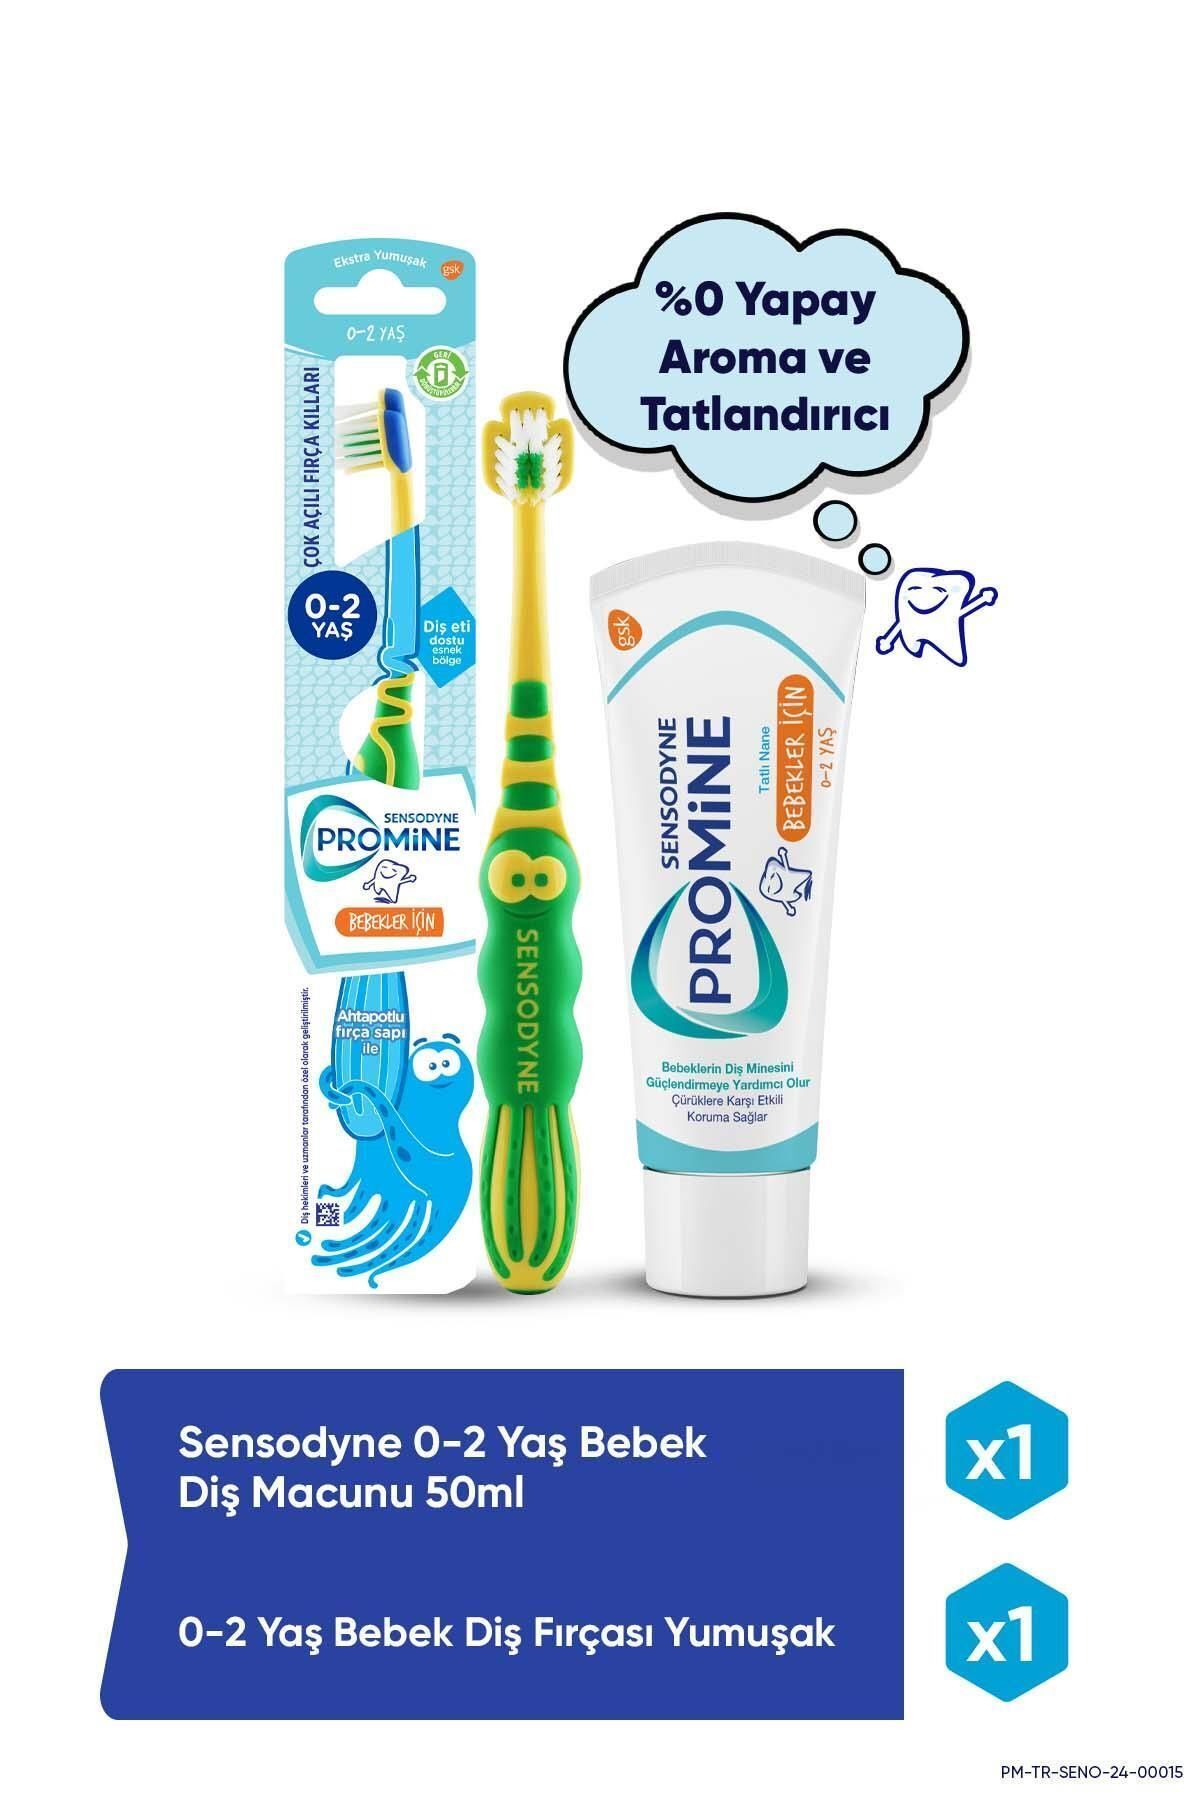 Sensodyne Promine 0-2 Yaş Aroma&Tatlandırıcı İçermeyen Bebek Diş Macunu 50ml + Yumuşak Diş Fırçası